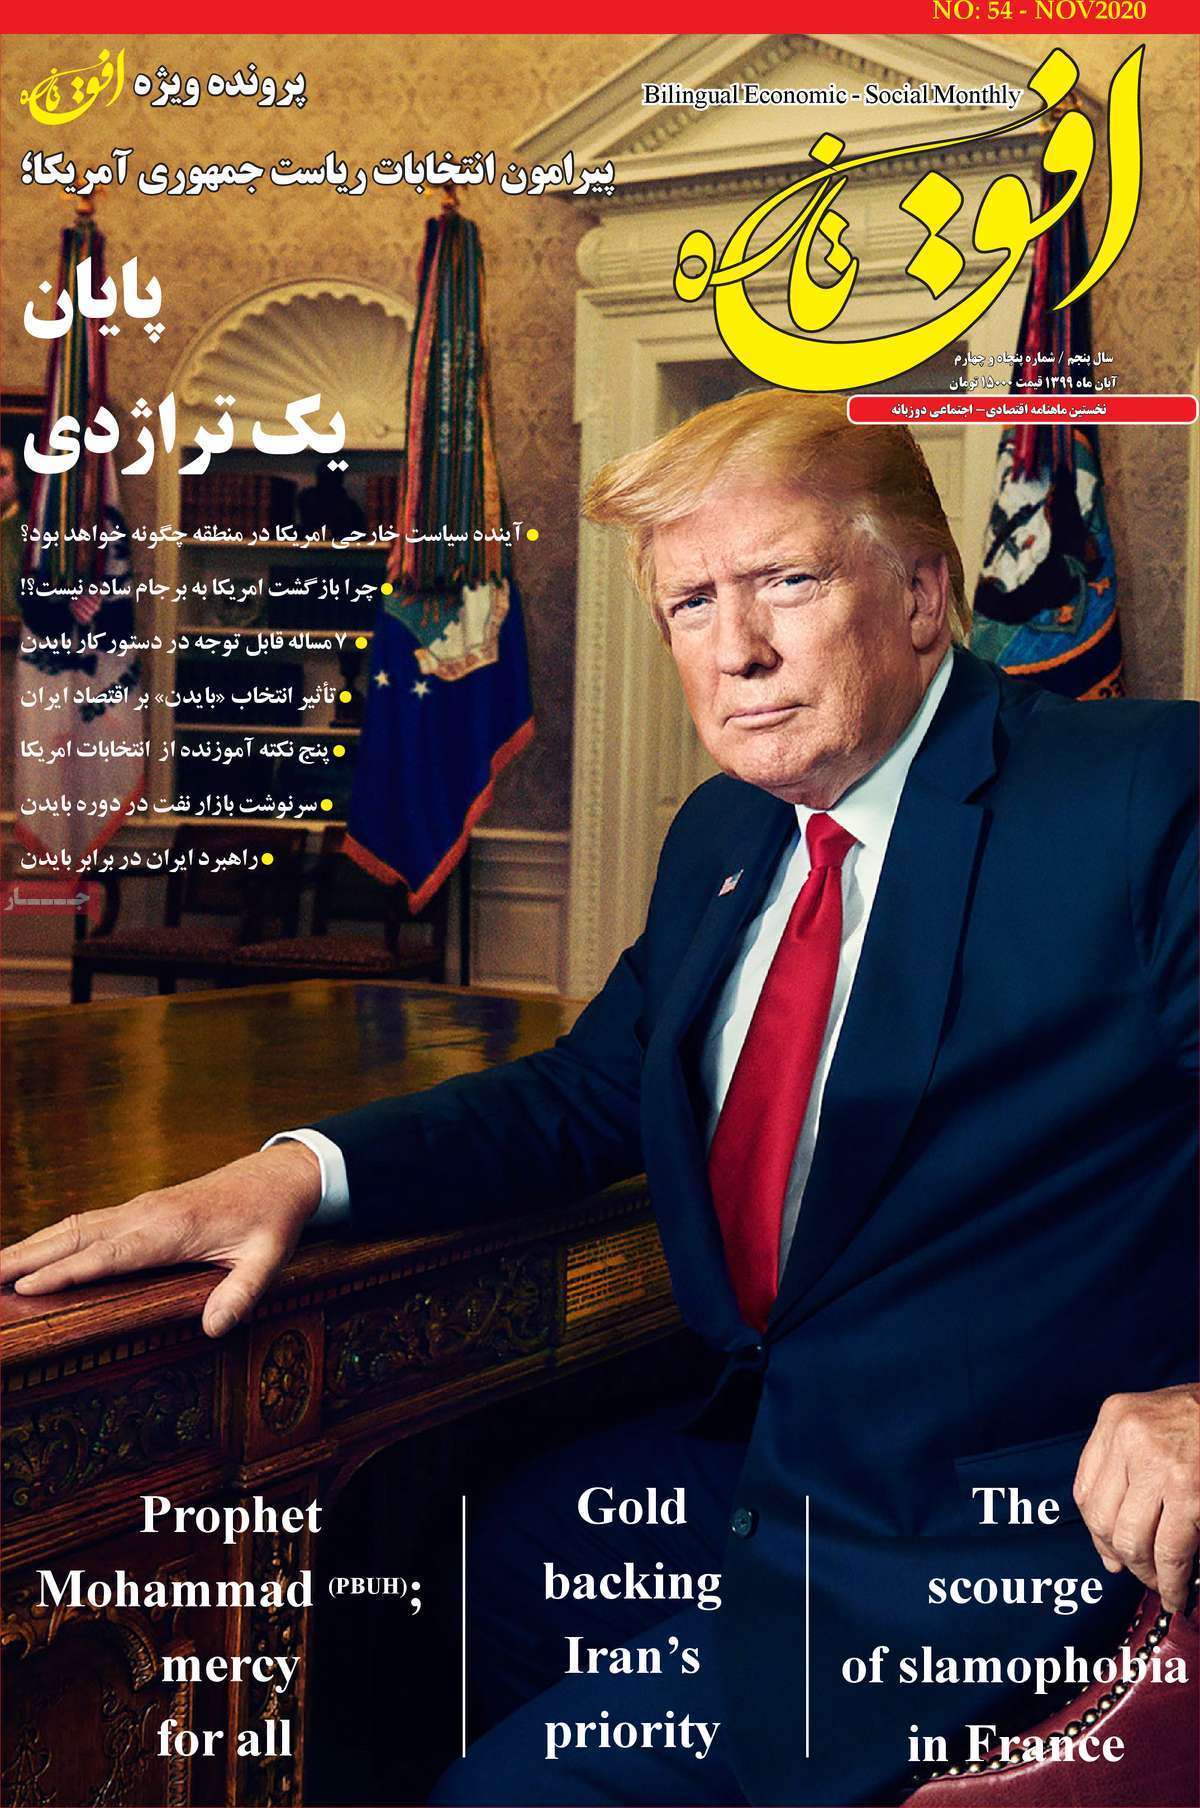 صفحه نخست مجله افق تازه - چهارشنبه, ۲۸ آبان ۱۳۹۹